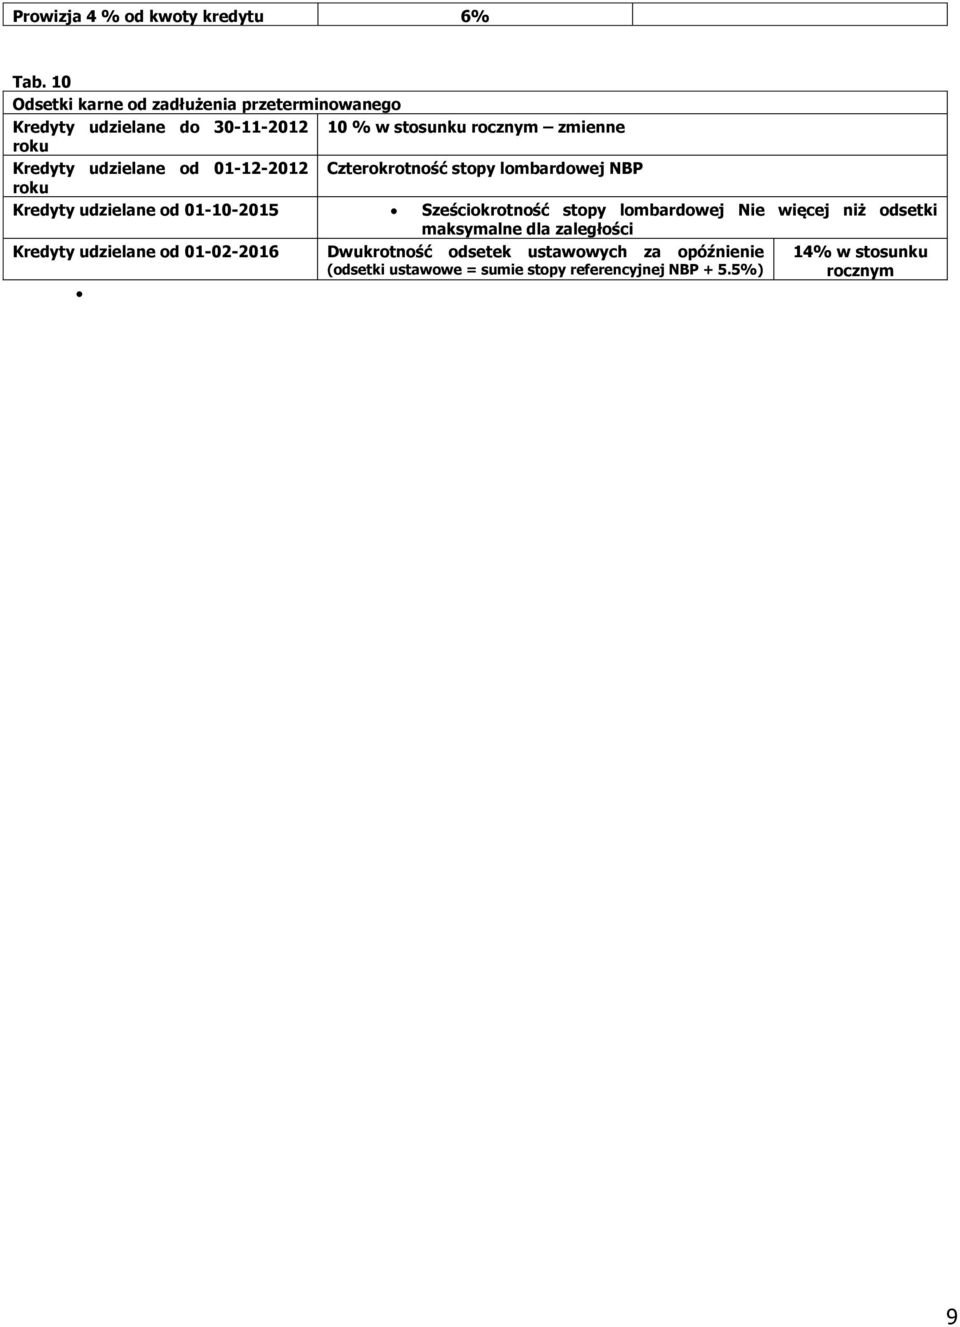 Kredyty udzielane od 01-12-2012 Czterokrotność stopy lombardowej NBP roku Kredyty udzielane od 01-10-2015 Sześciokrotność